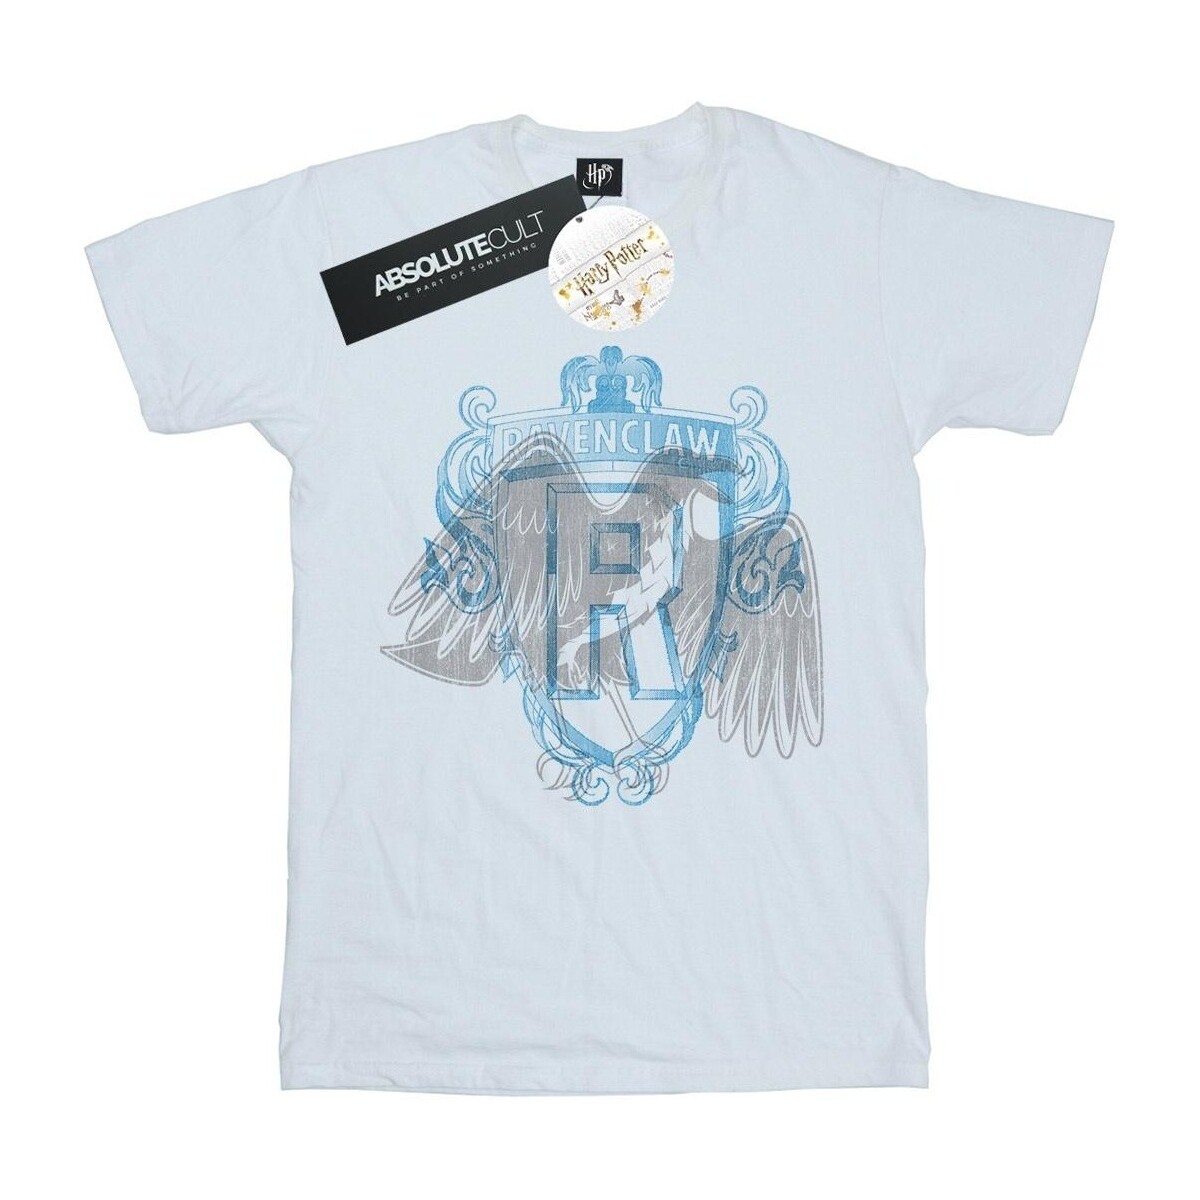 Vêtements Garçon T-shirts manches courtes Harry Potter Ravenclaw Raven Crest Blanc